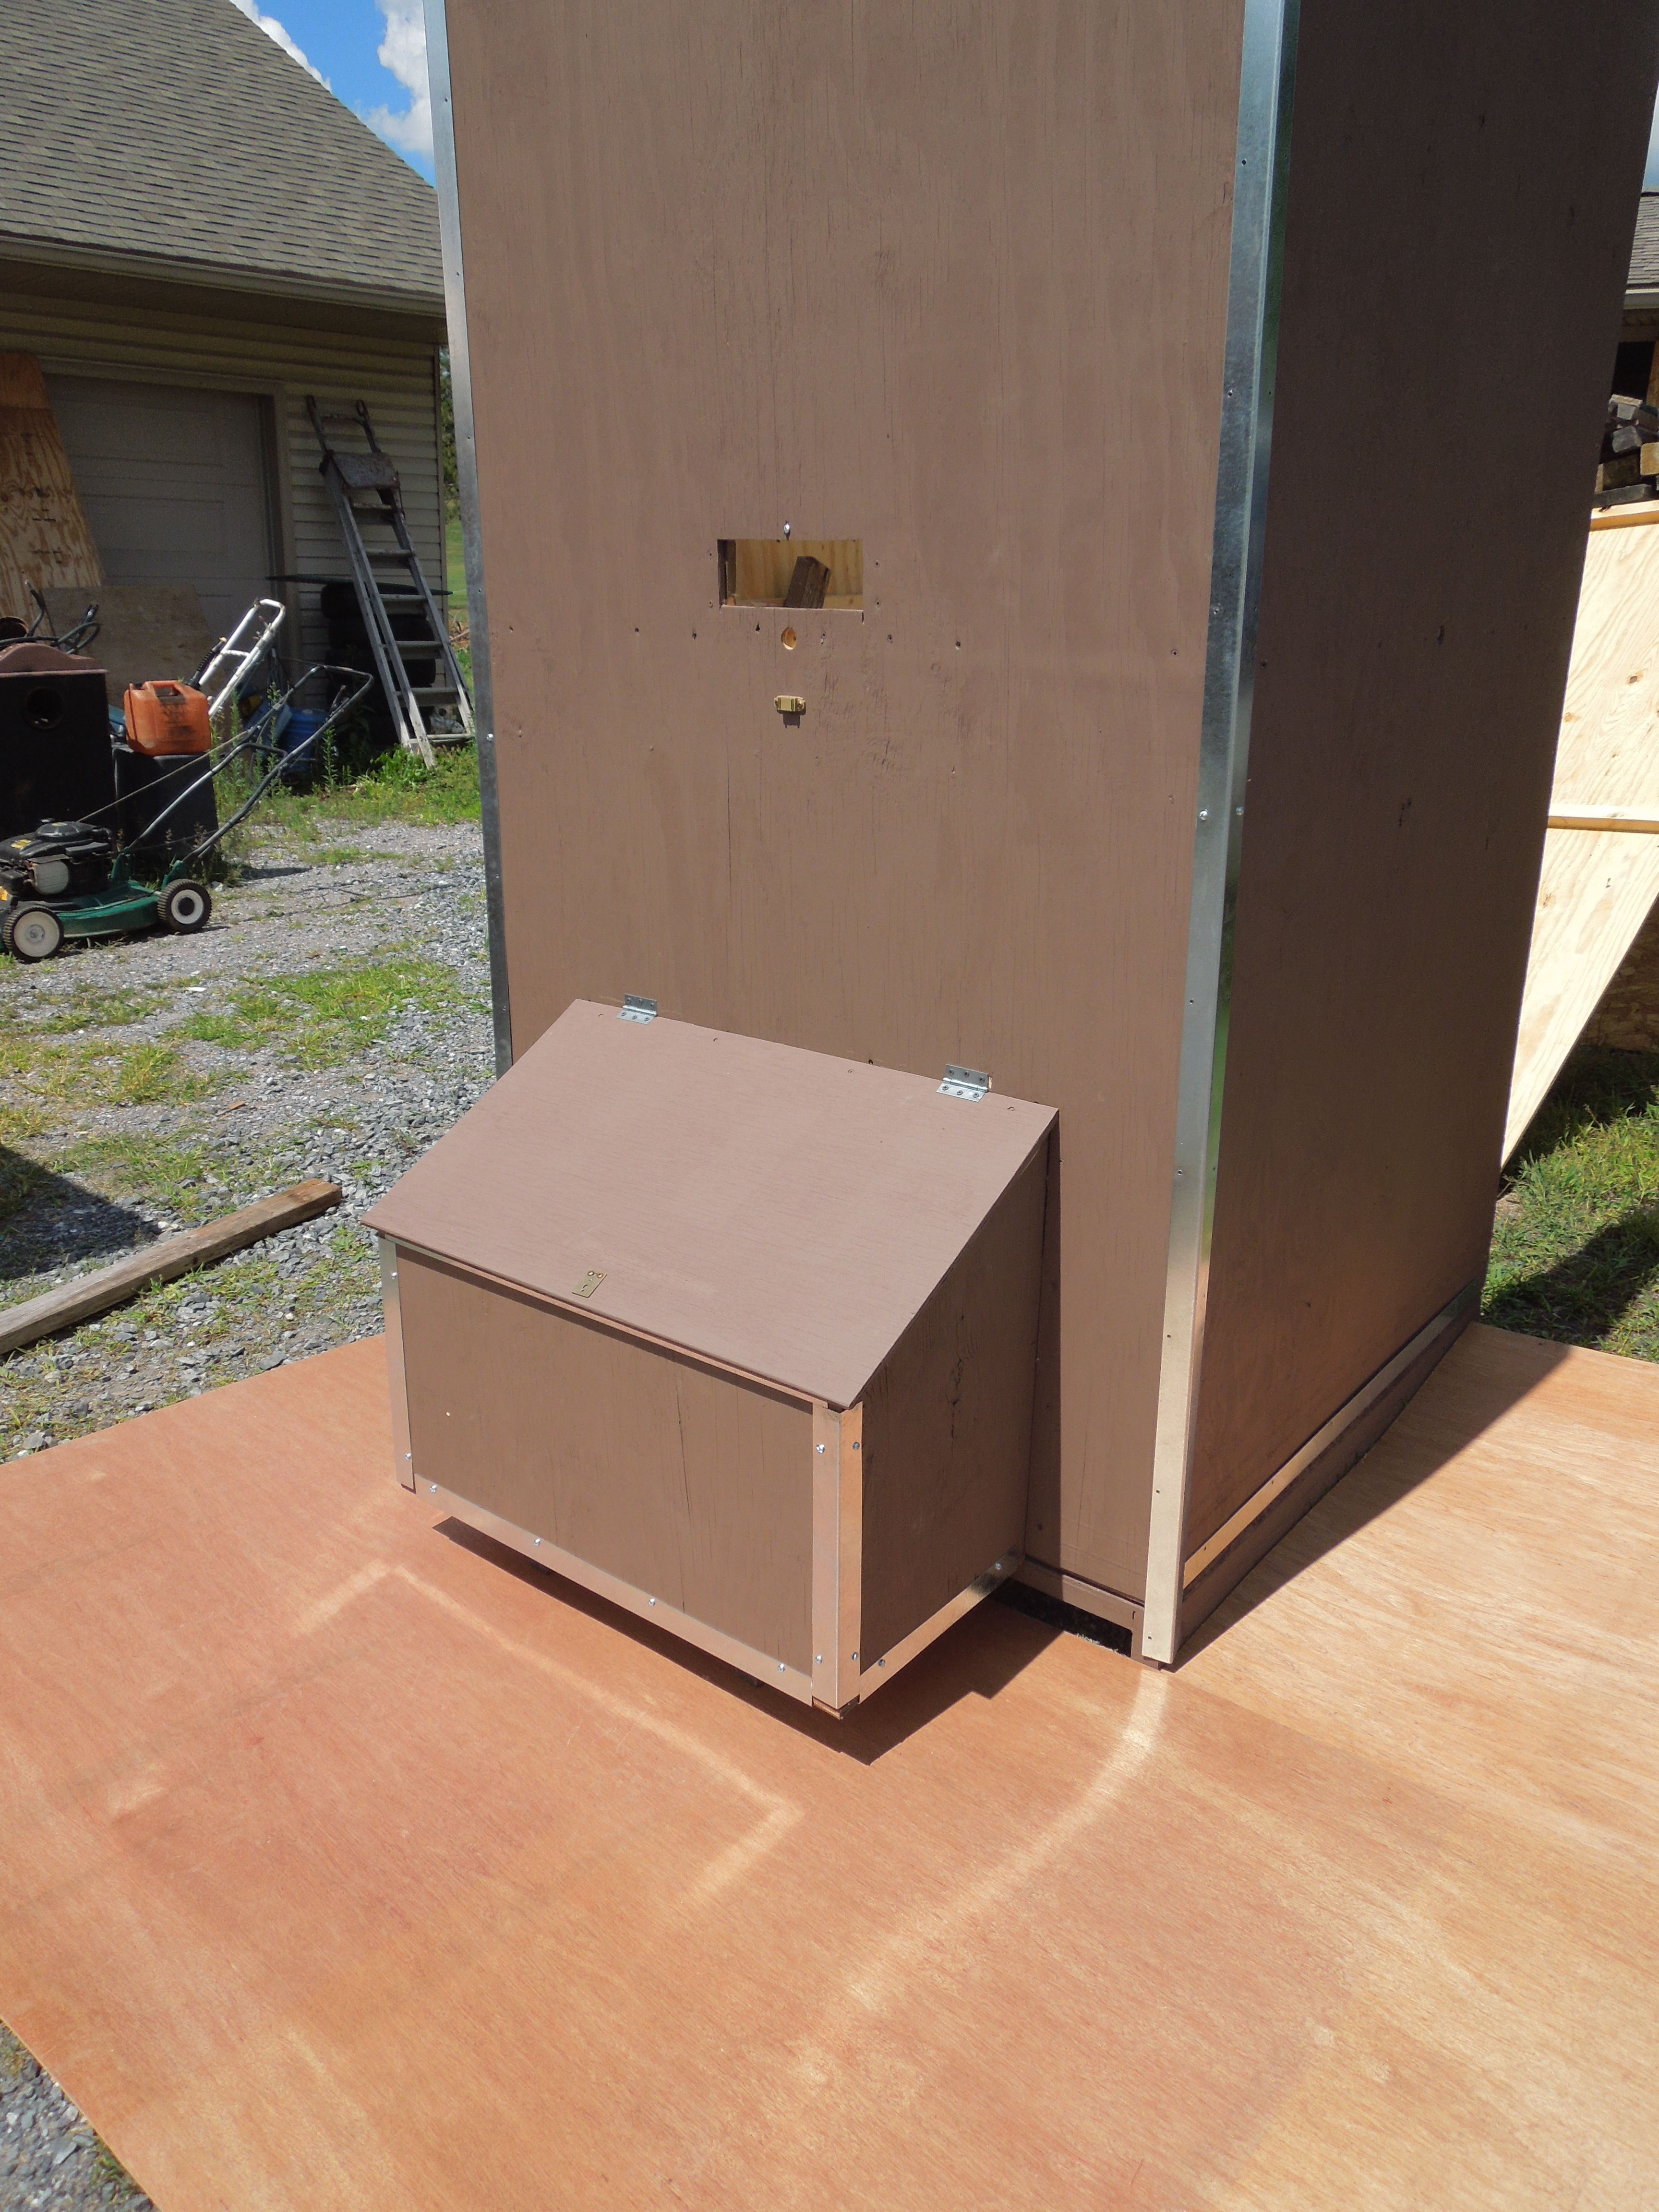 Wood Pellet Storage Bin Plans Free Diy For Pellet Stove In 2019 in measurements 3456 X 4608